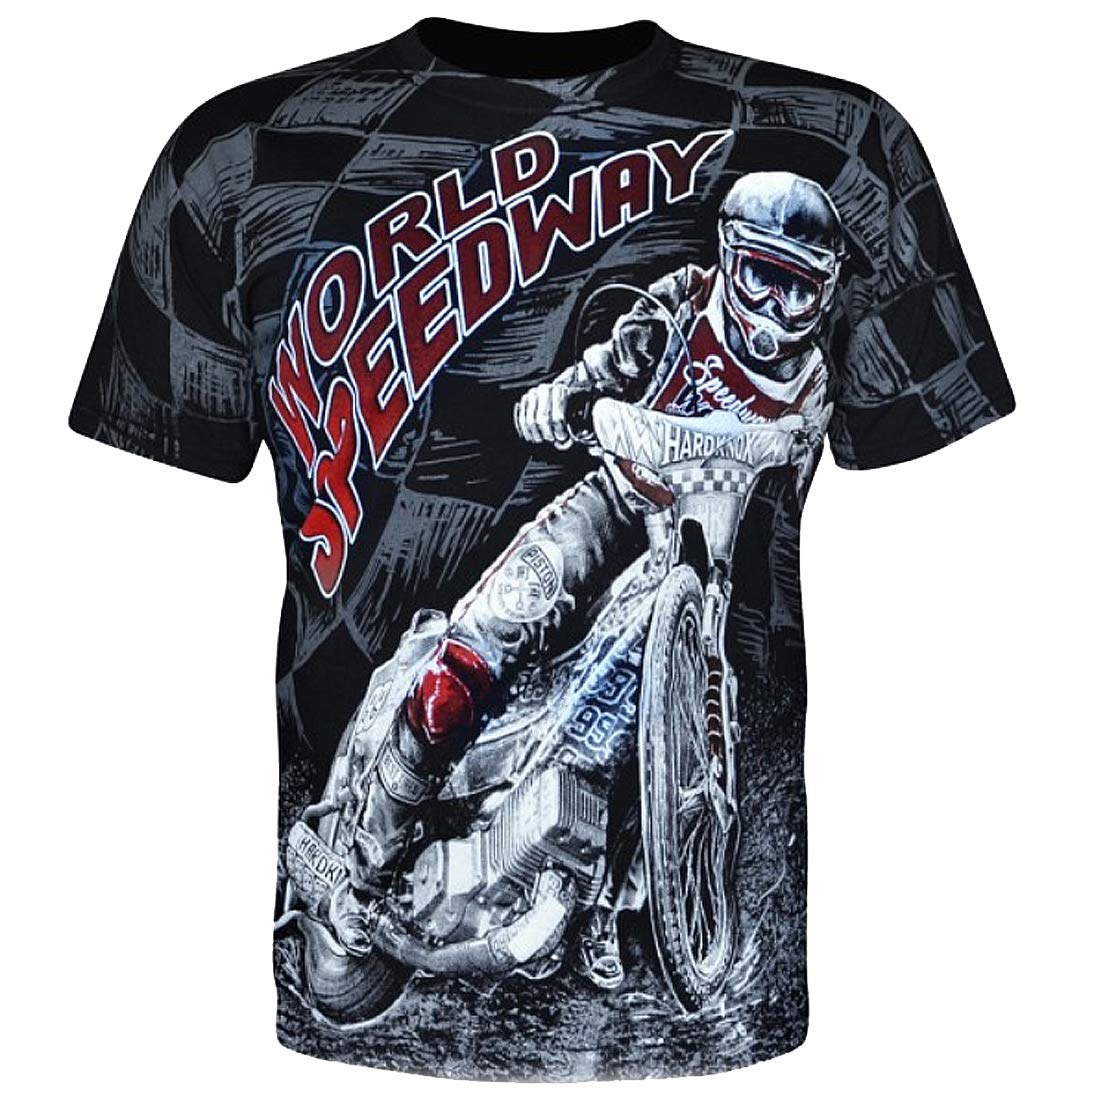 World Speedway - Herren T-Shirt (M)